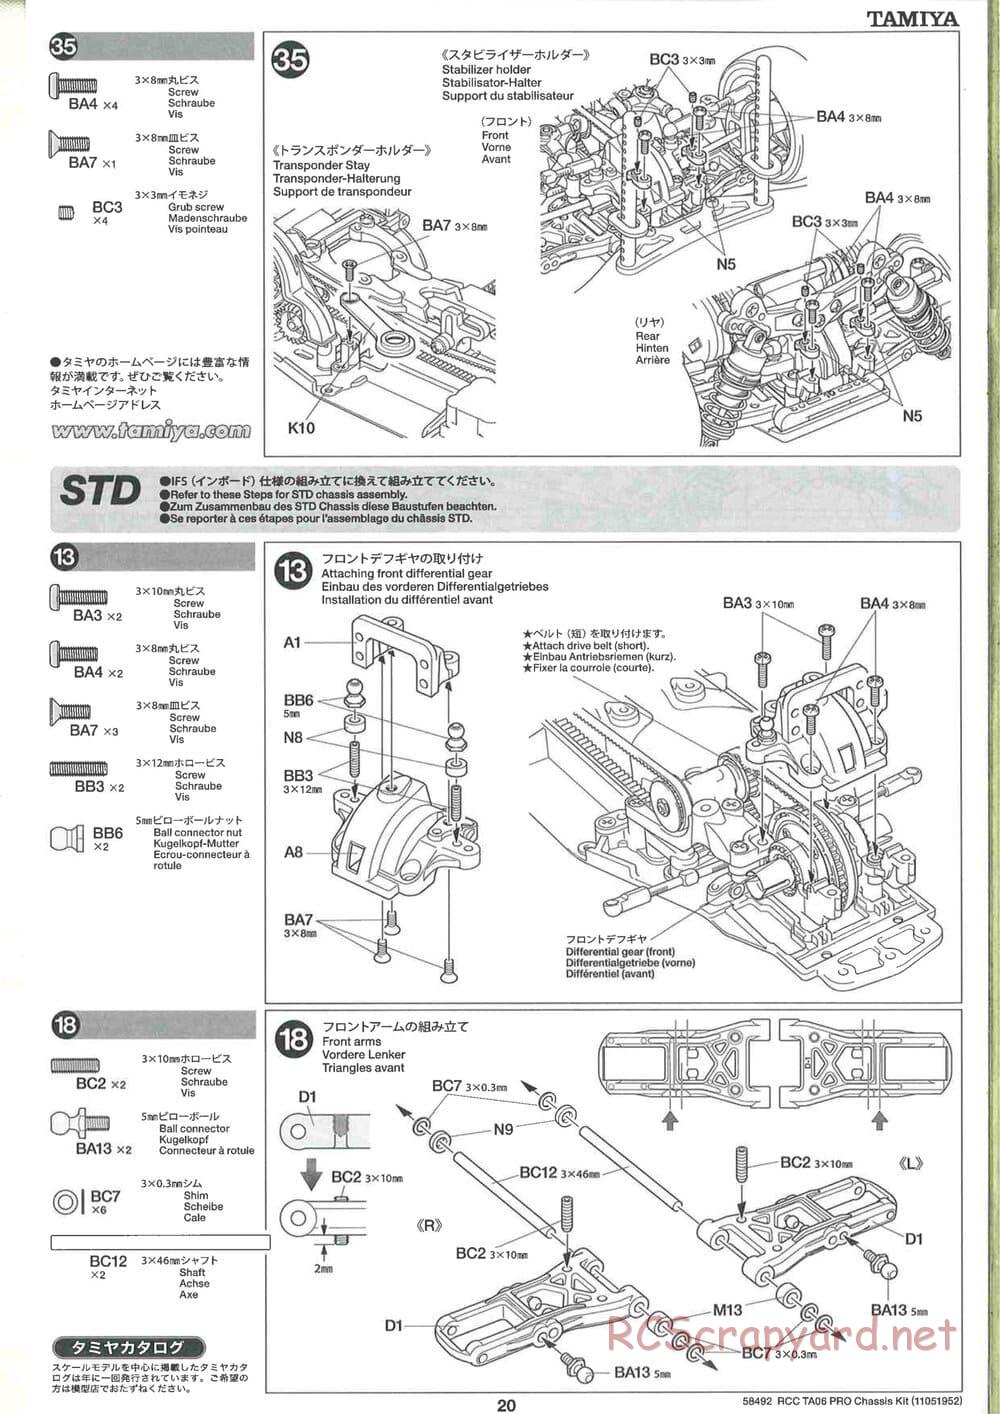 Tamiya - TA06 Pro Chassis - Manual - Page 20